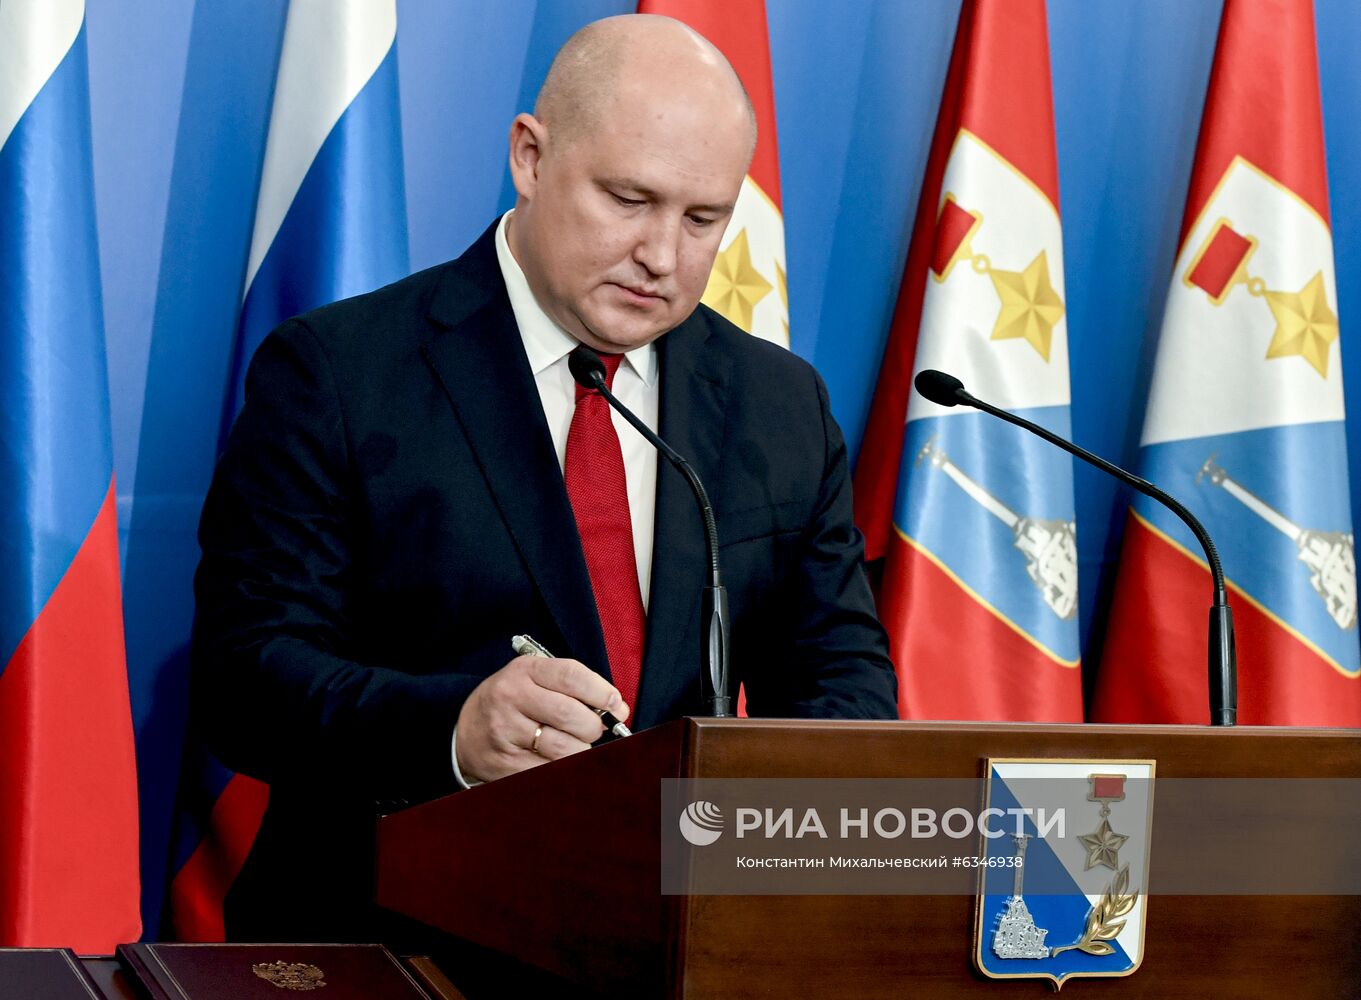 Вступление М. Развожаева в должность губернатора Севастополя